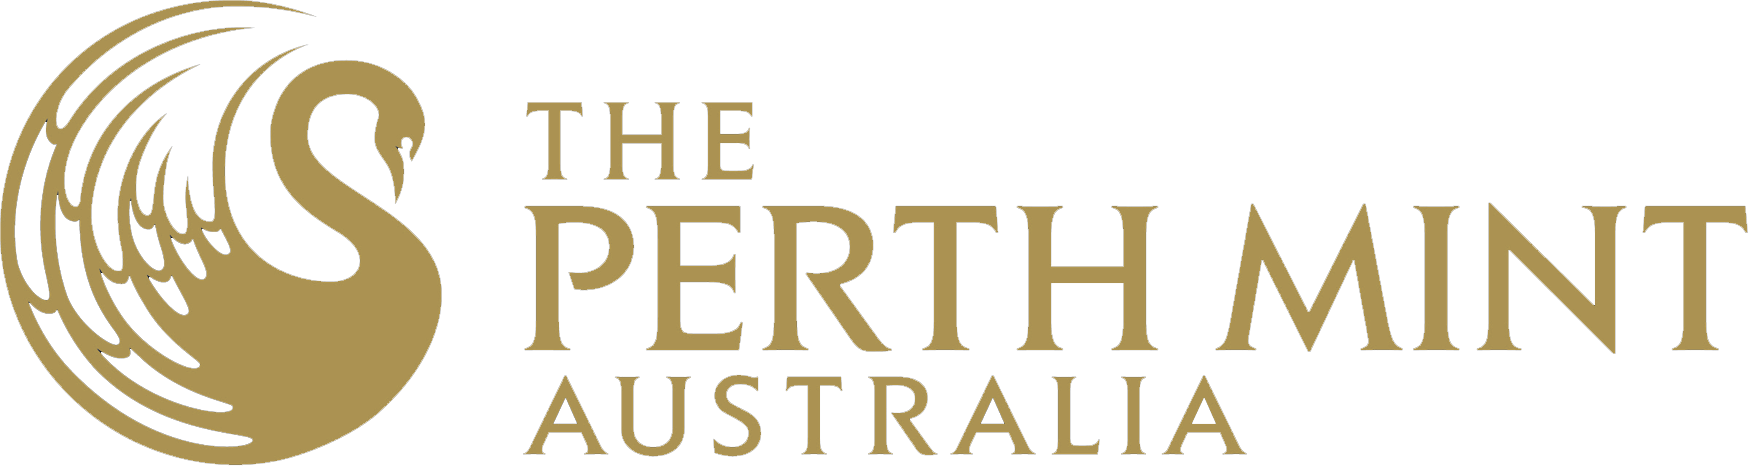 Perth Mint